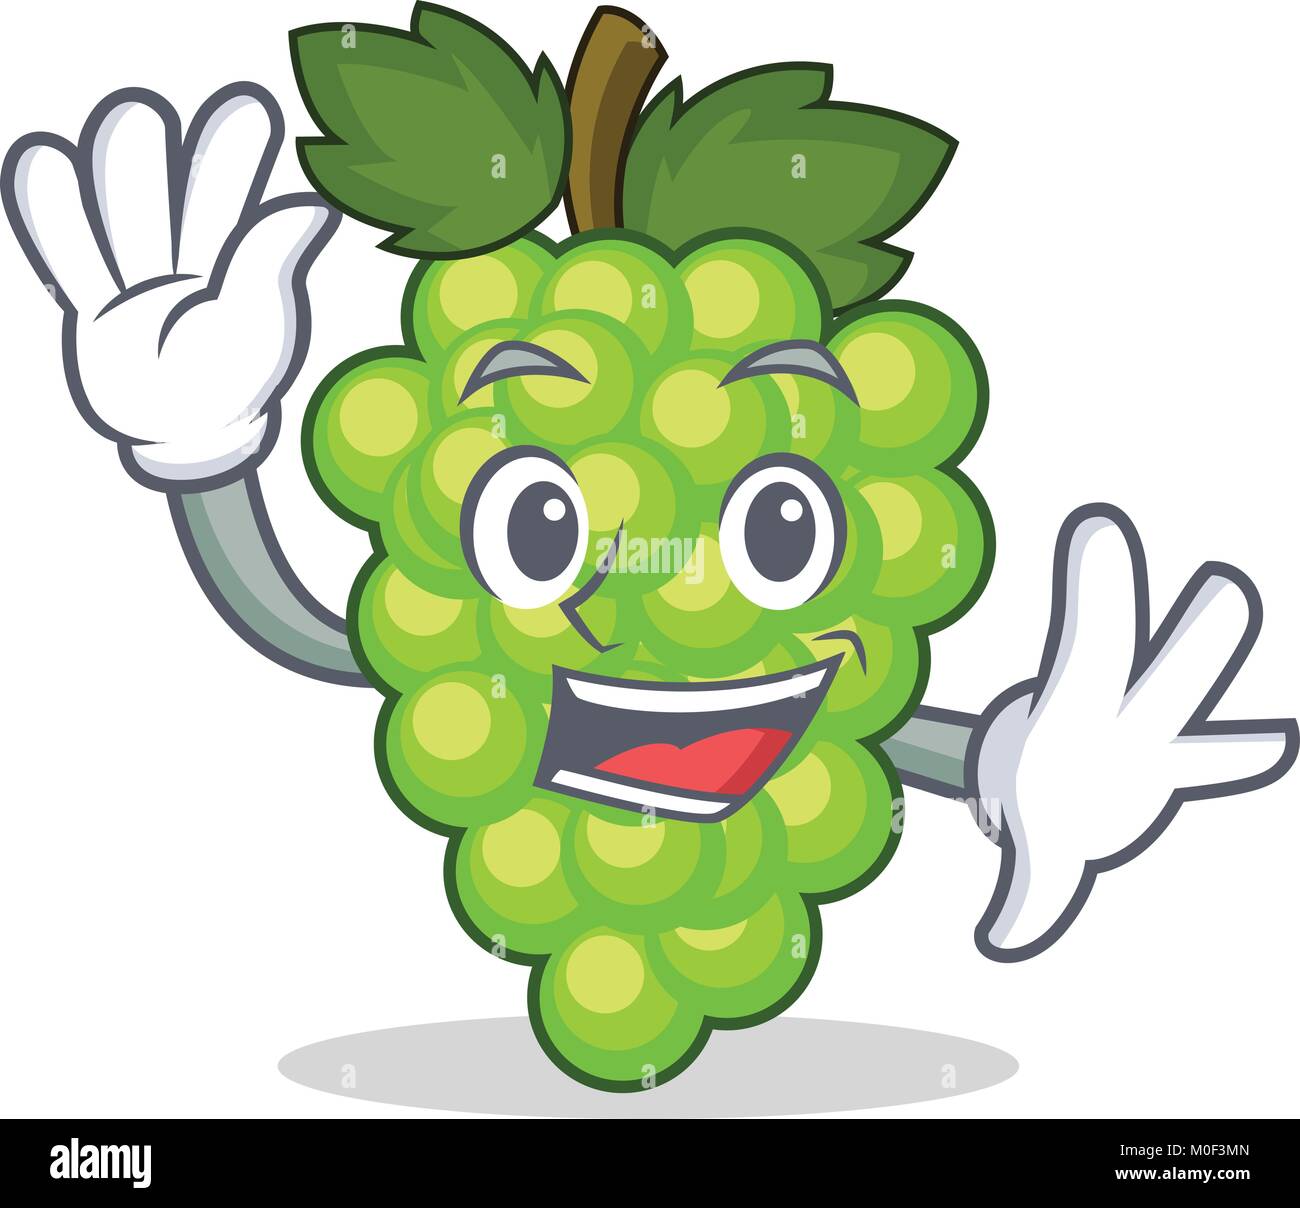 Waving green grapes character cartoon Stock Vector